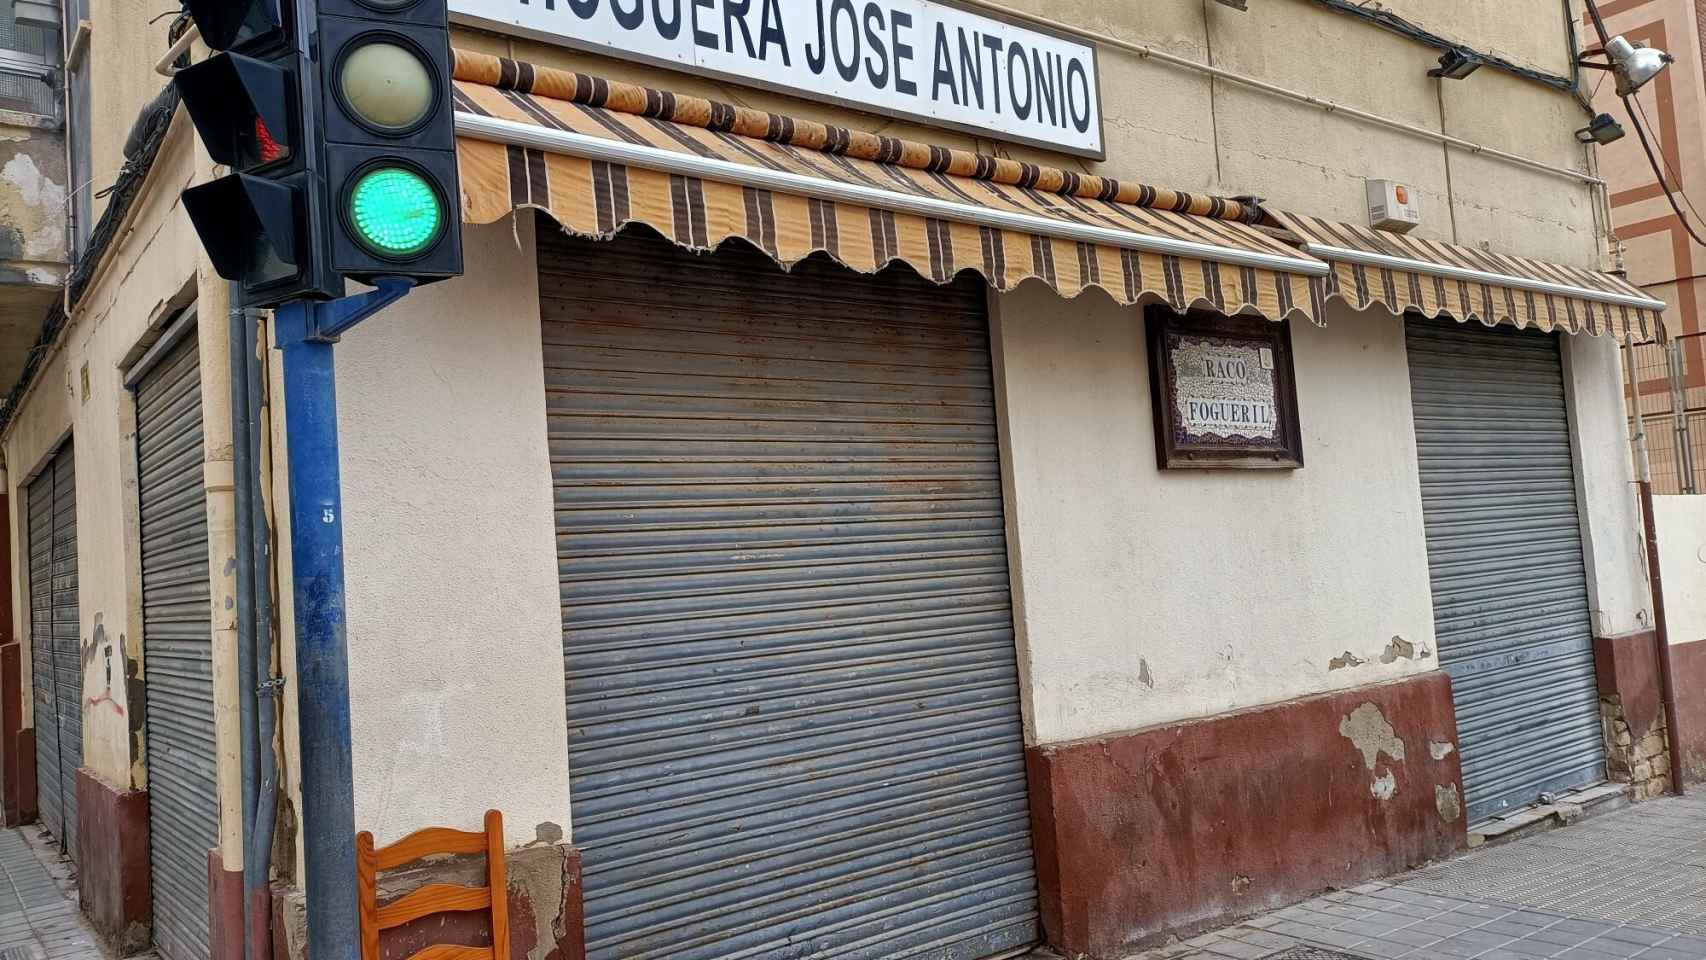 Los vecinos siguen llamando a su barrio, a su hoguera y a su club deportivo José Antonio.